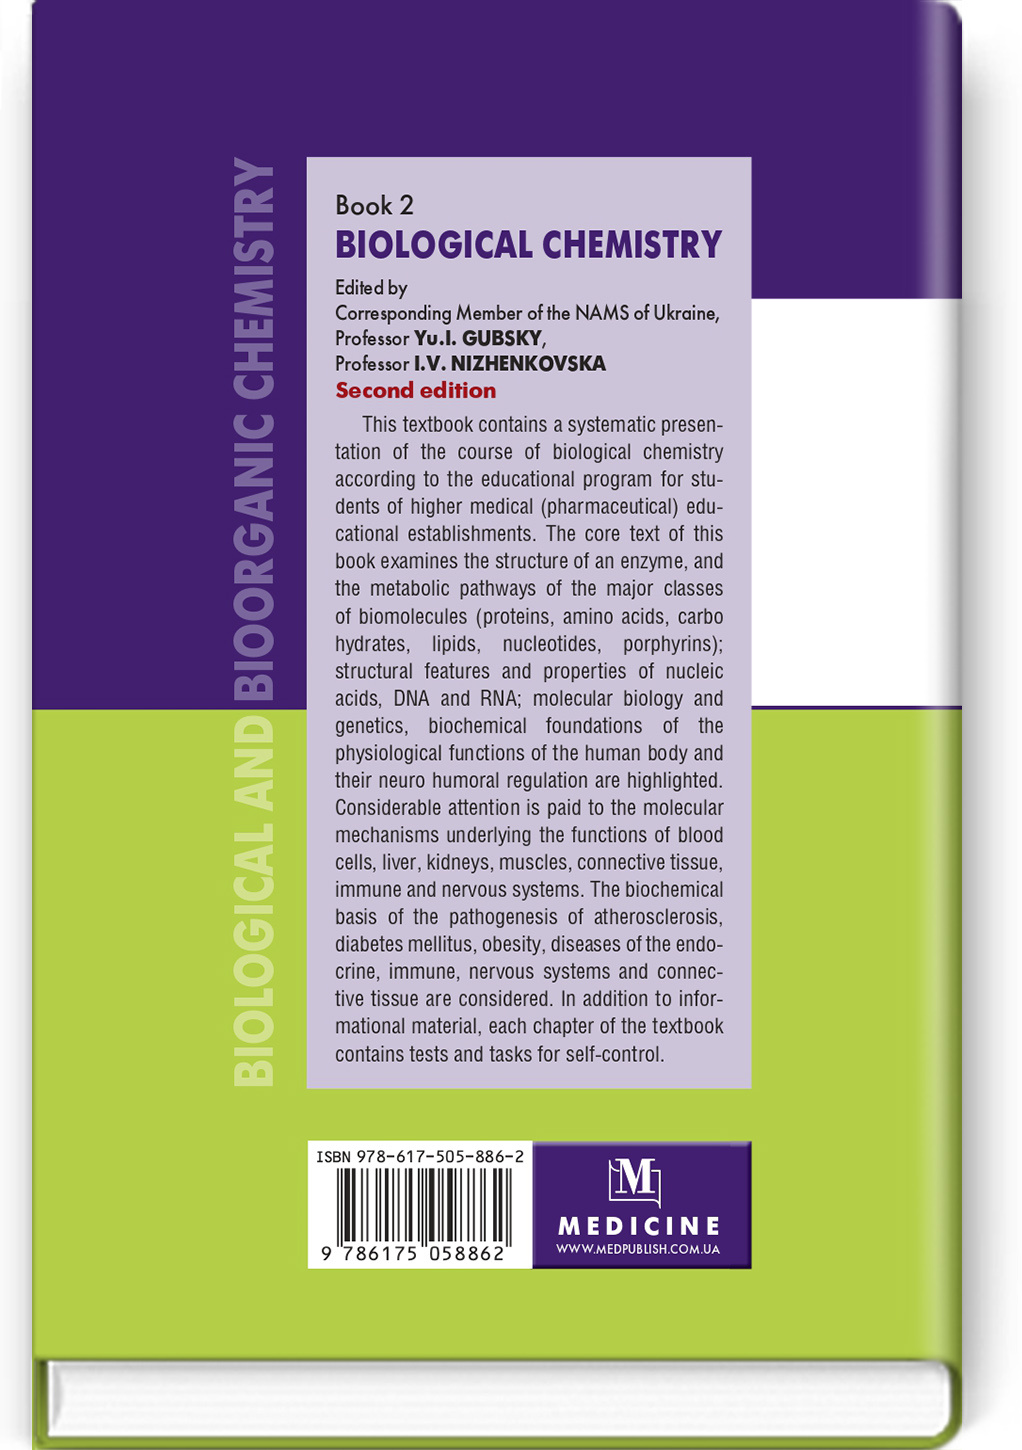 Biological and Bioorganic Chemistry: in 2 books. Book 2. Biological Chemistry: textbook. Автор — I.V. Nizhenkovska, Yu.I. Gubsky, М.М. Korda, B.G. Borzenko, O.Z. Brazaluk, G.M. Ersteniuk, K.O. Efetov, V.I. Zhukov, N.V. Zaichko, I.O. Komarevtseva, M.B. Lutsyuk, O.O. Mardashko, I.F. Meshchyshen, K.S. Neporada, O.Ya. Sklyarov, L.M. Tarasenko, O.M. Torokhtin, T.I. Bondarchuk, O.V. Kuznetsova, O.V. Lozova, A.S. Yagupova. 